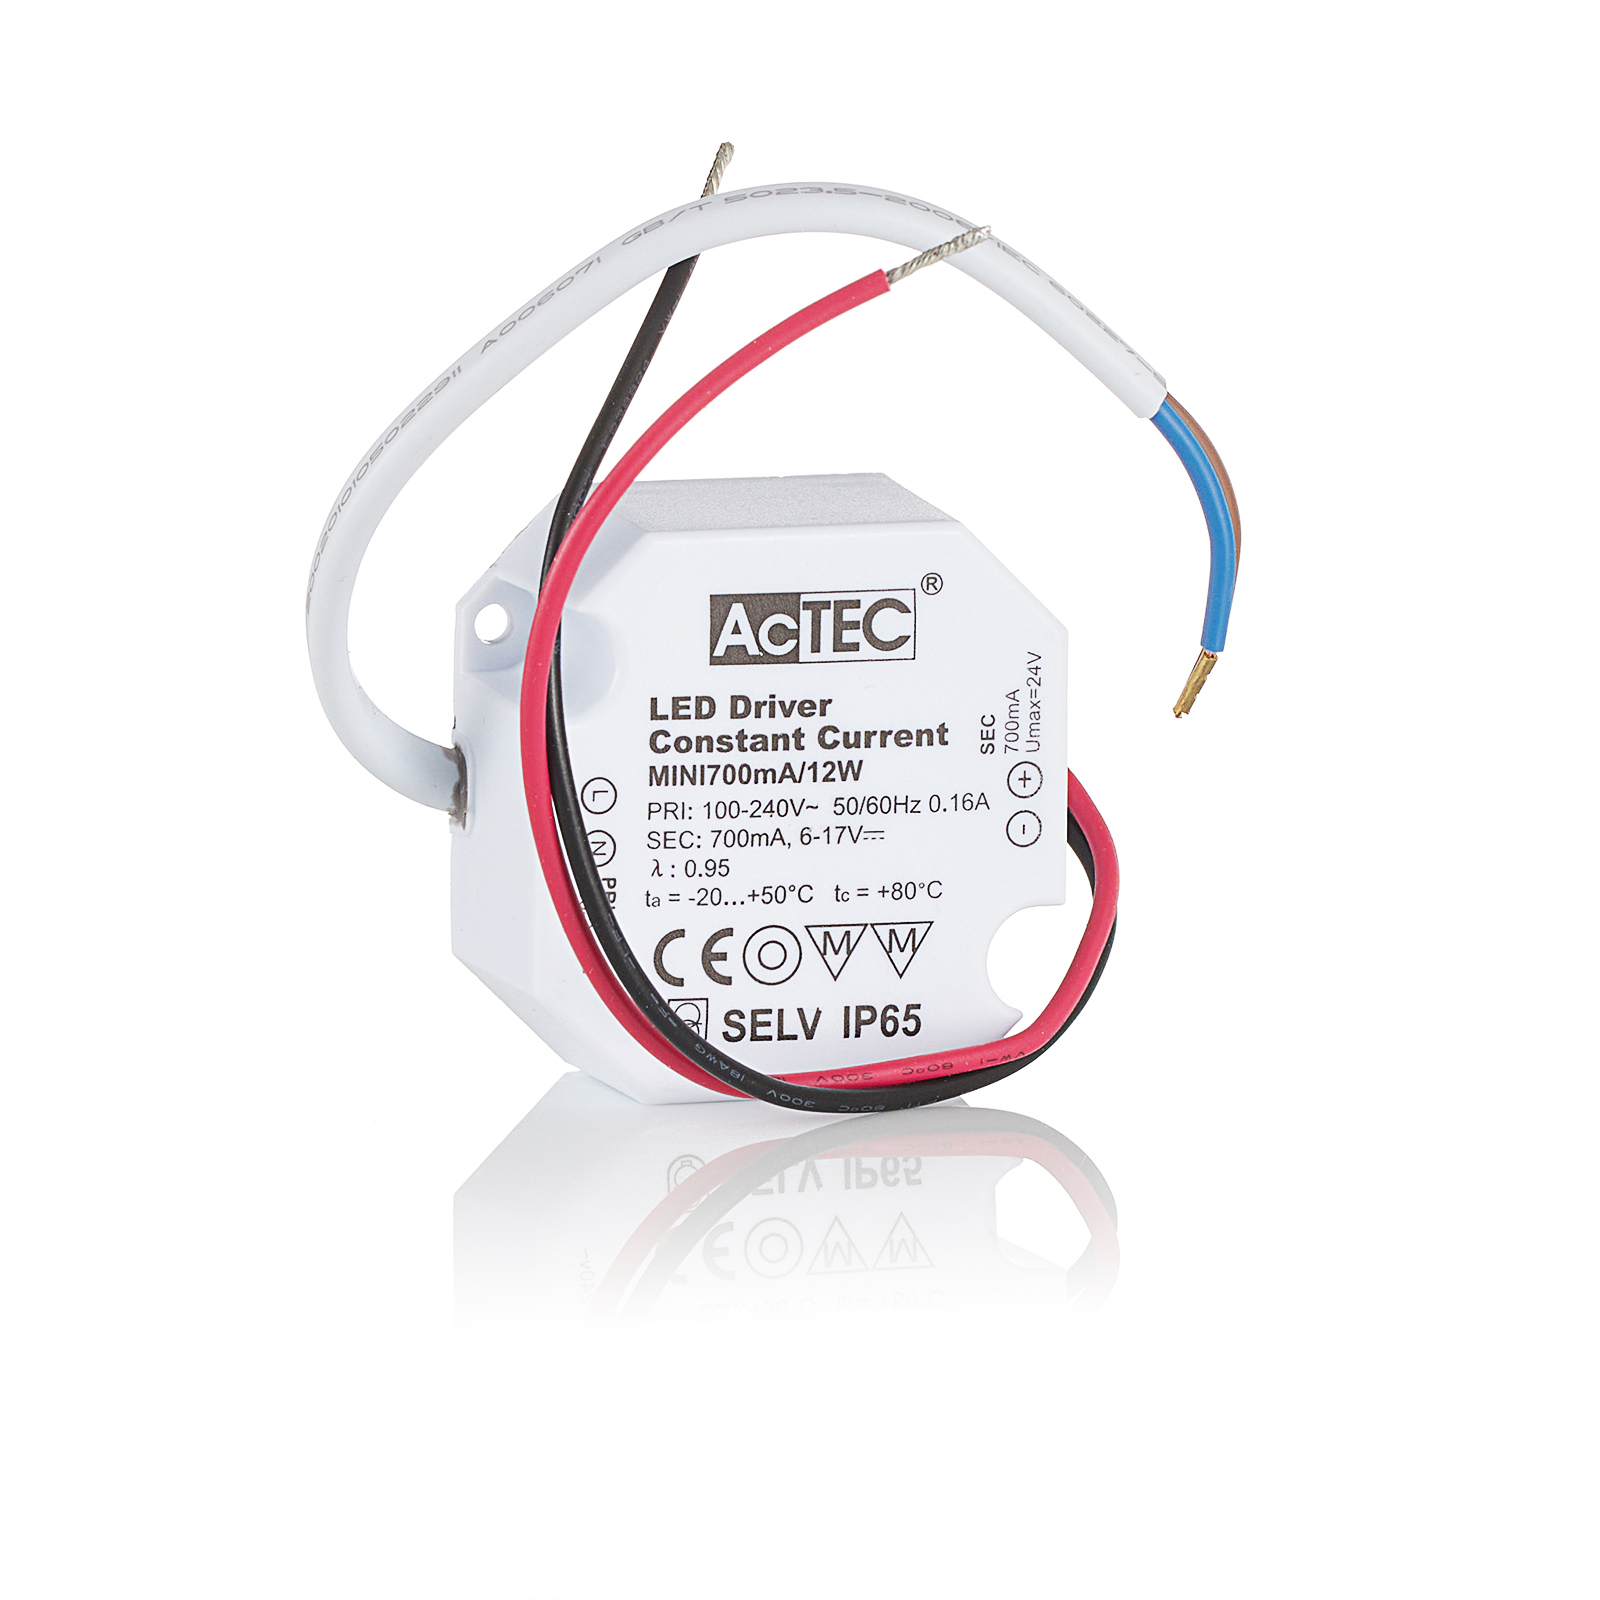 AcTEC Mini transformador LED CC 700mA, 12W, IP65